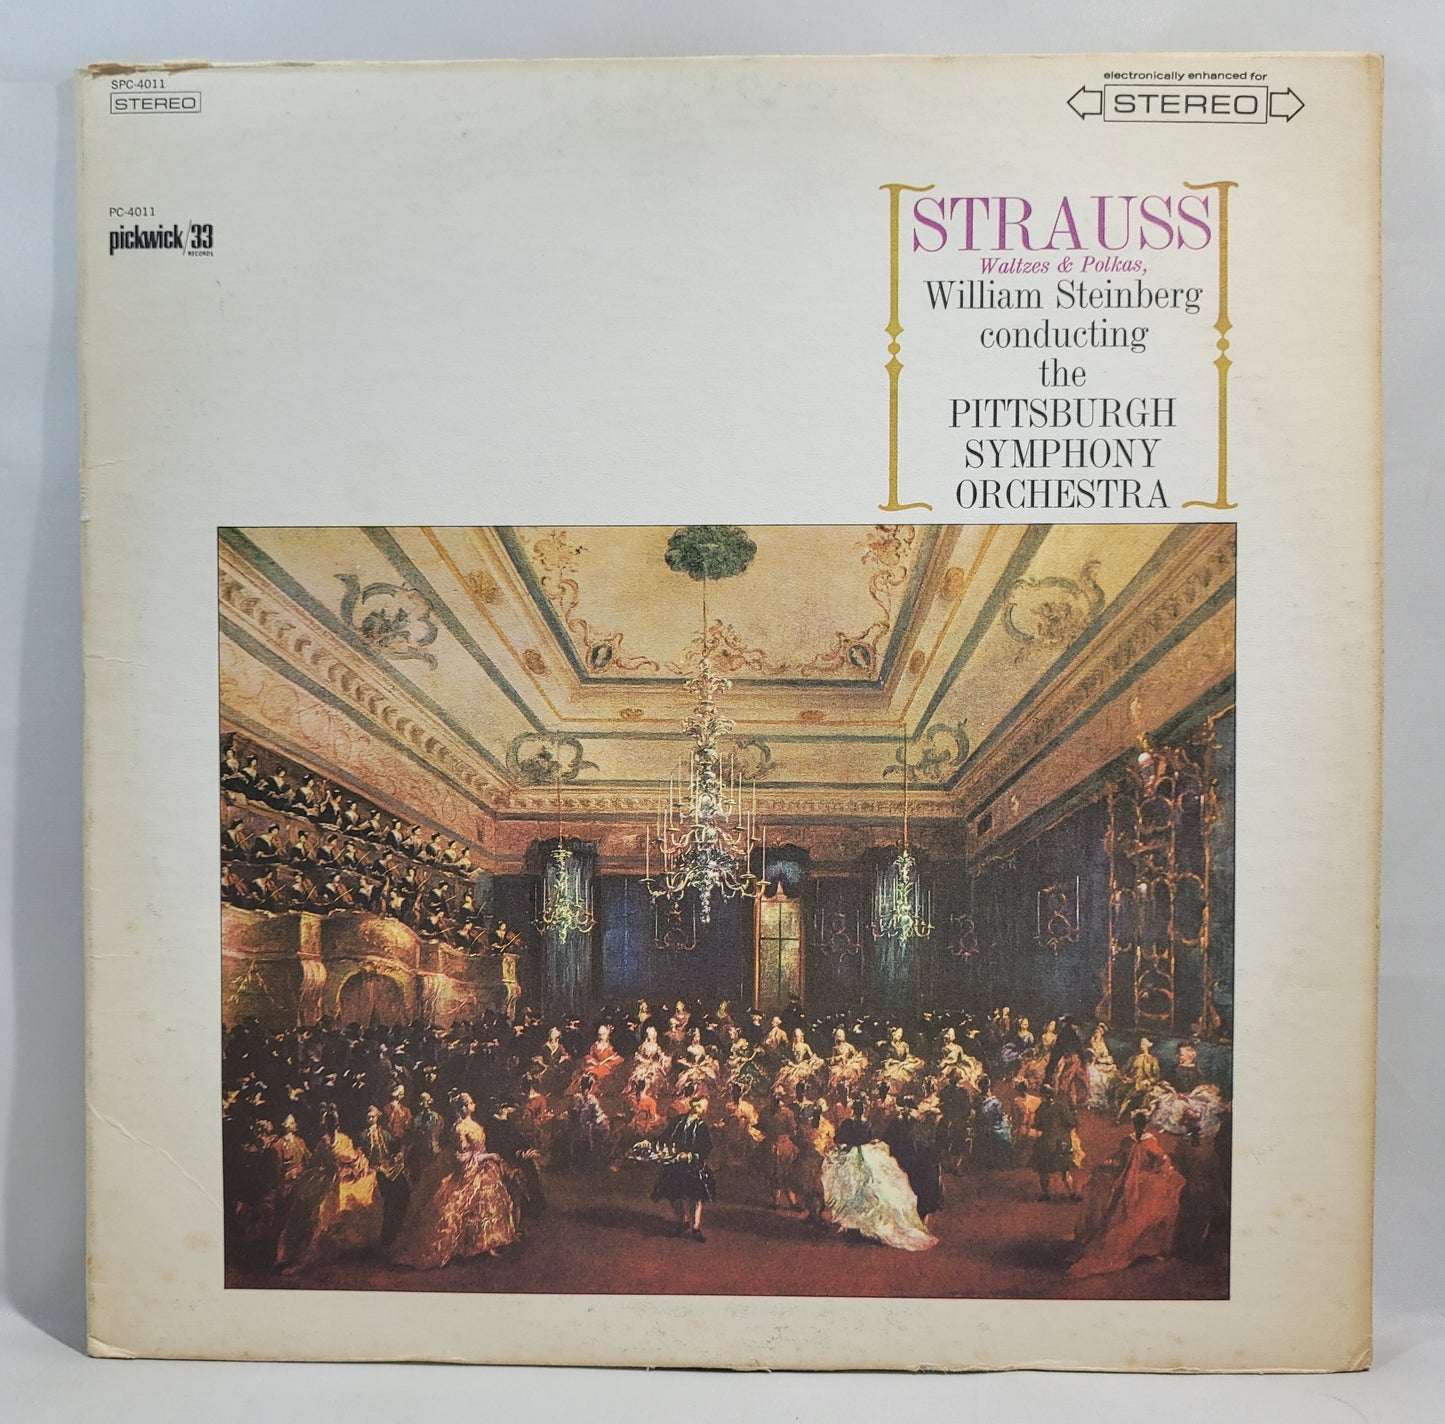 William Steinberg - Strauss: Waltzes & Polkas [Vinyl Record LP]